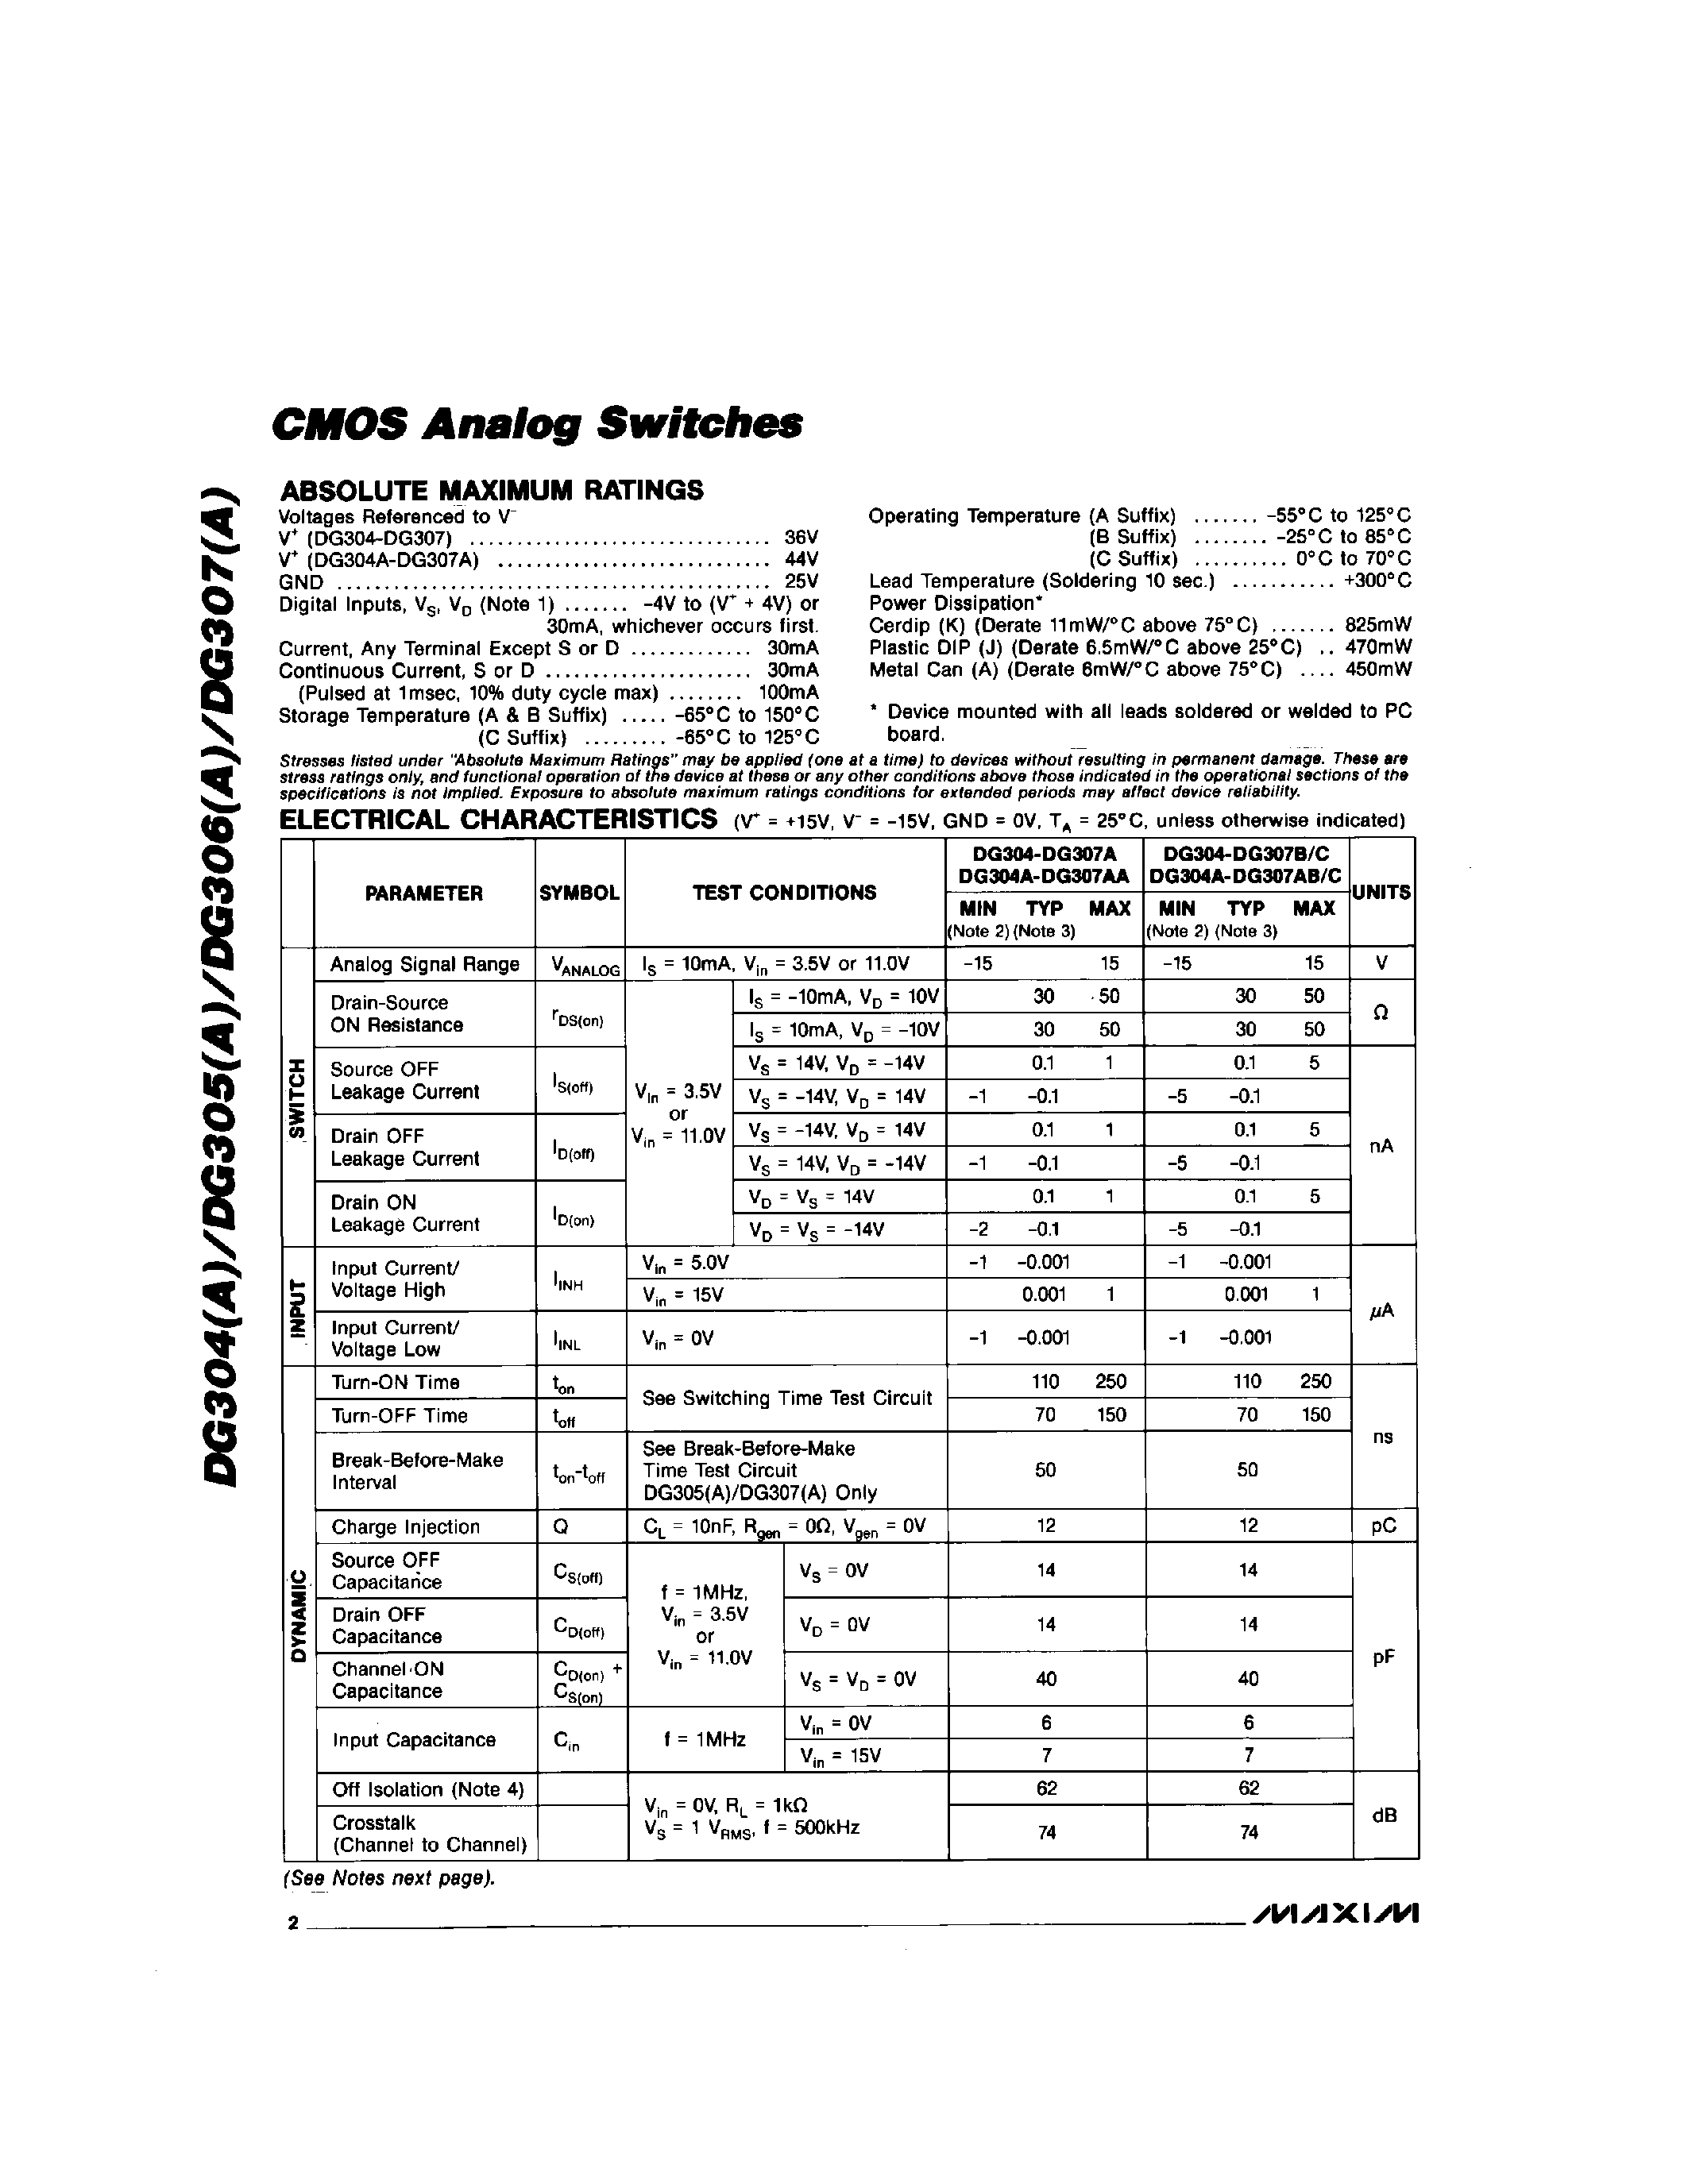 Даташит DG306C/D - CMOS Analog Switchs страница 2